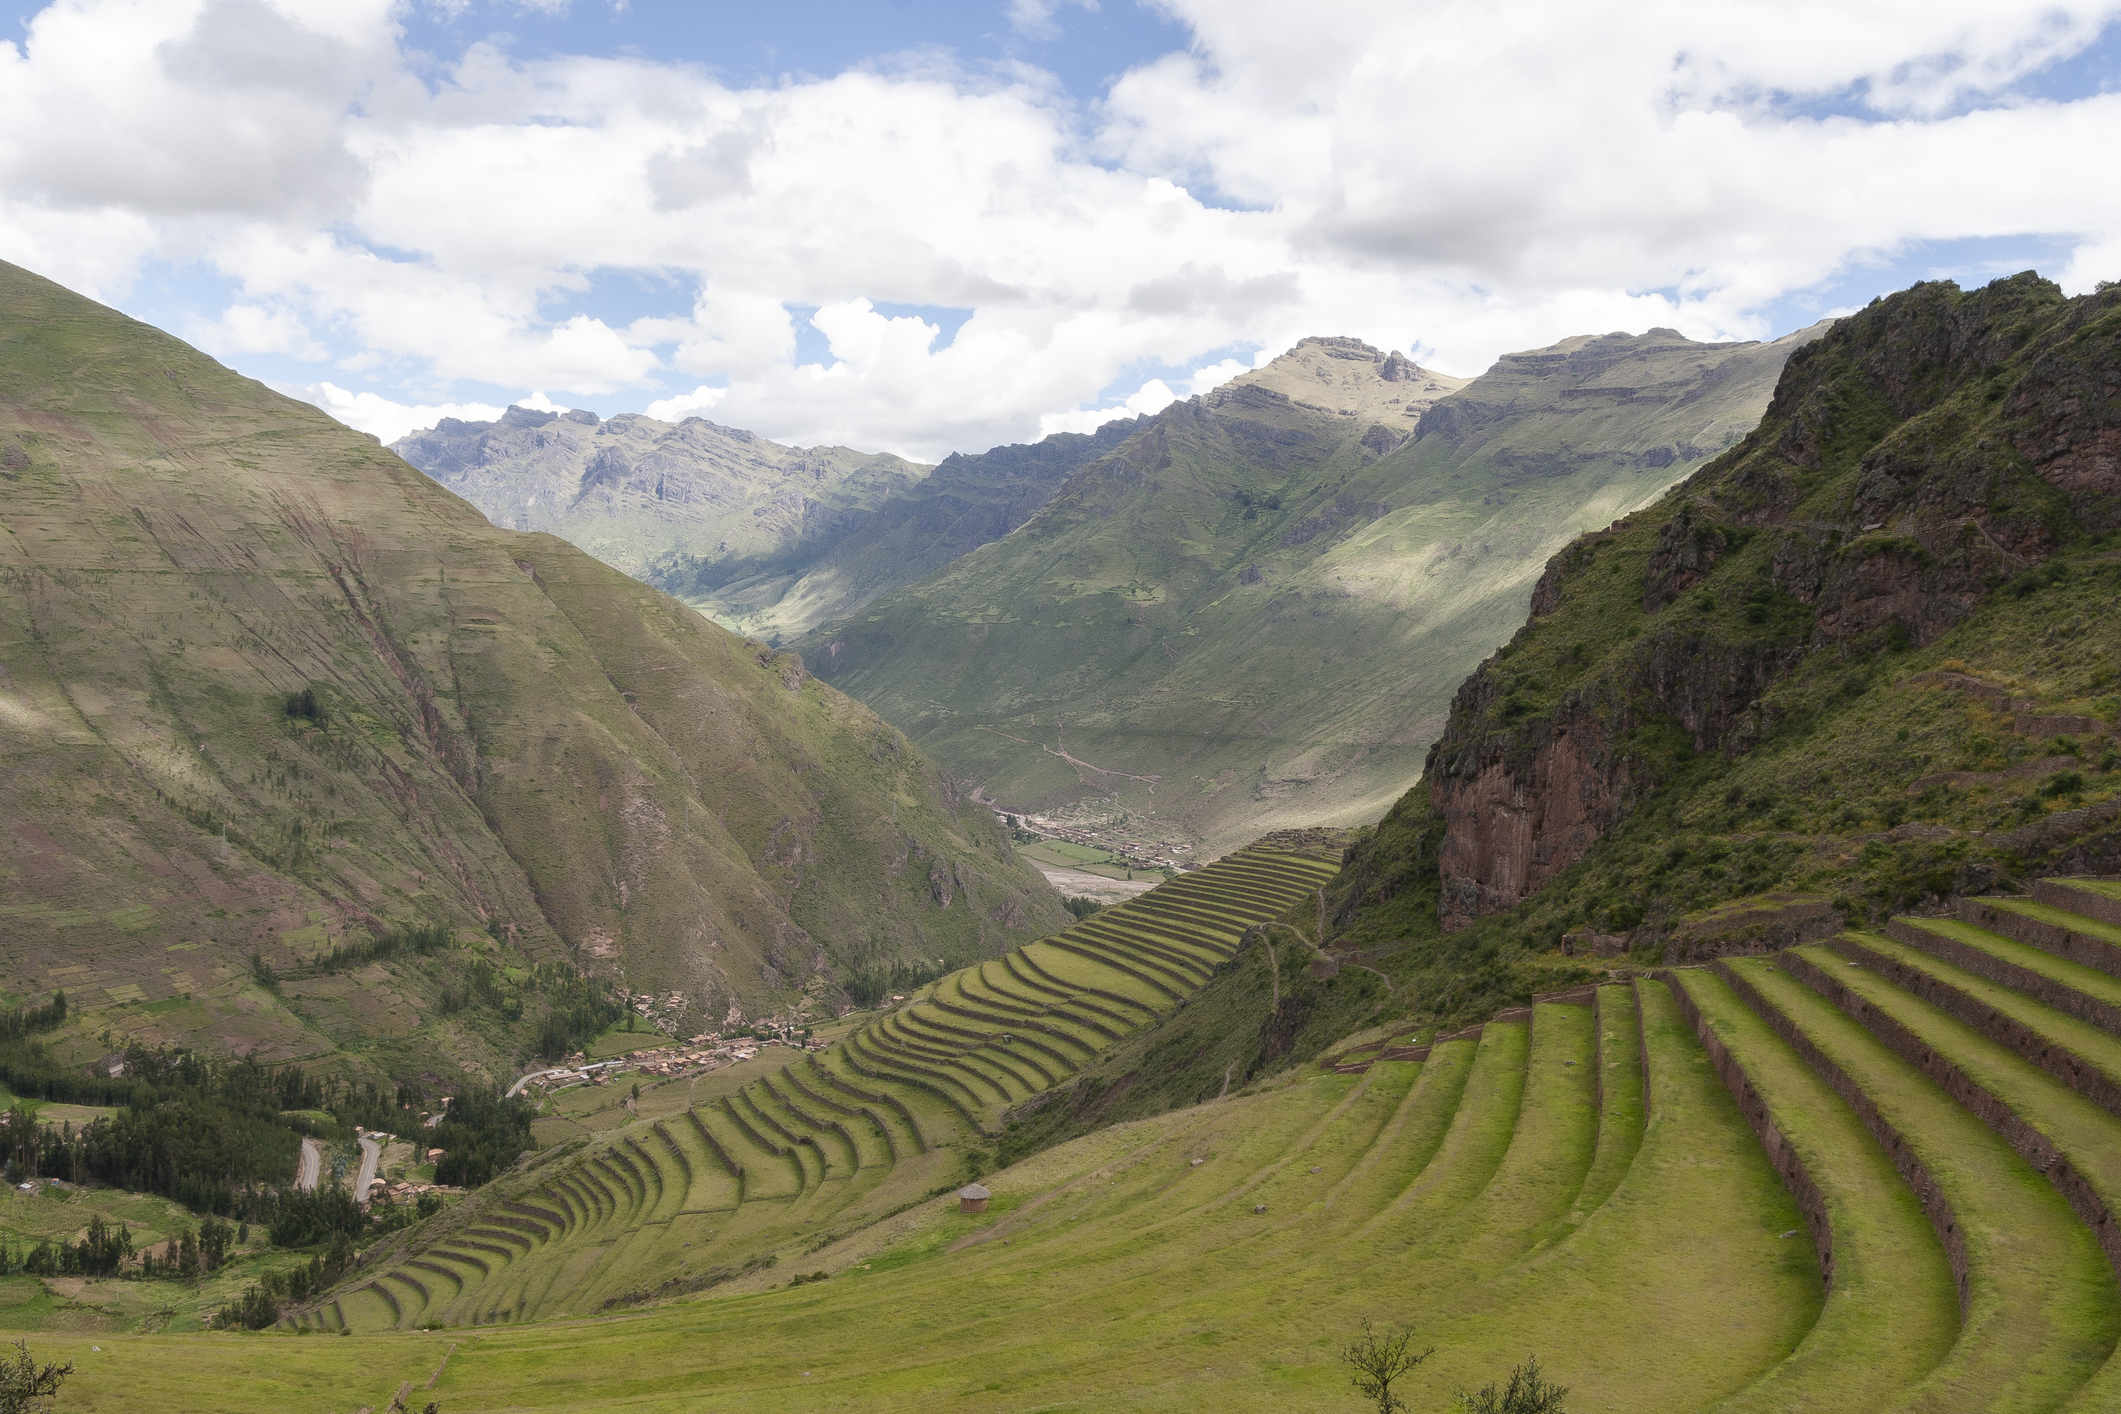 Crop terraces in Peru